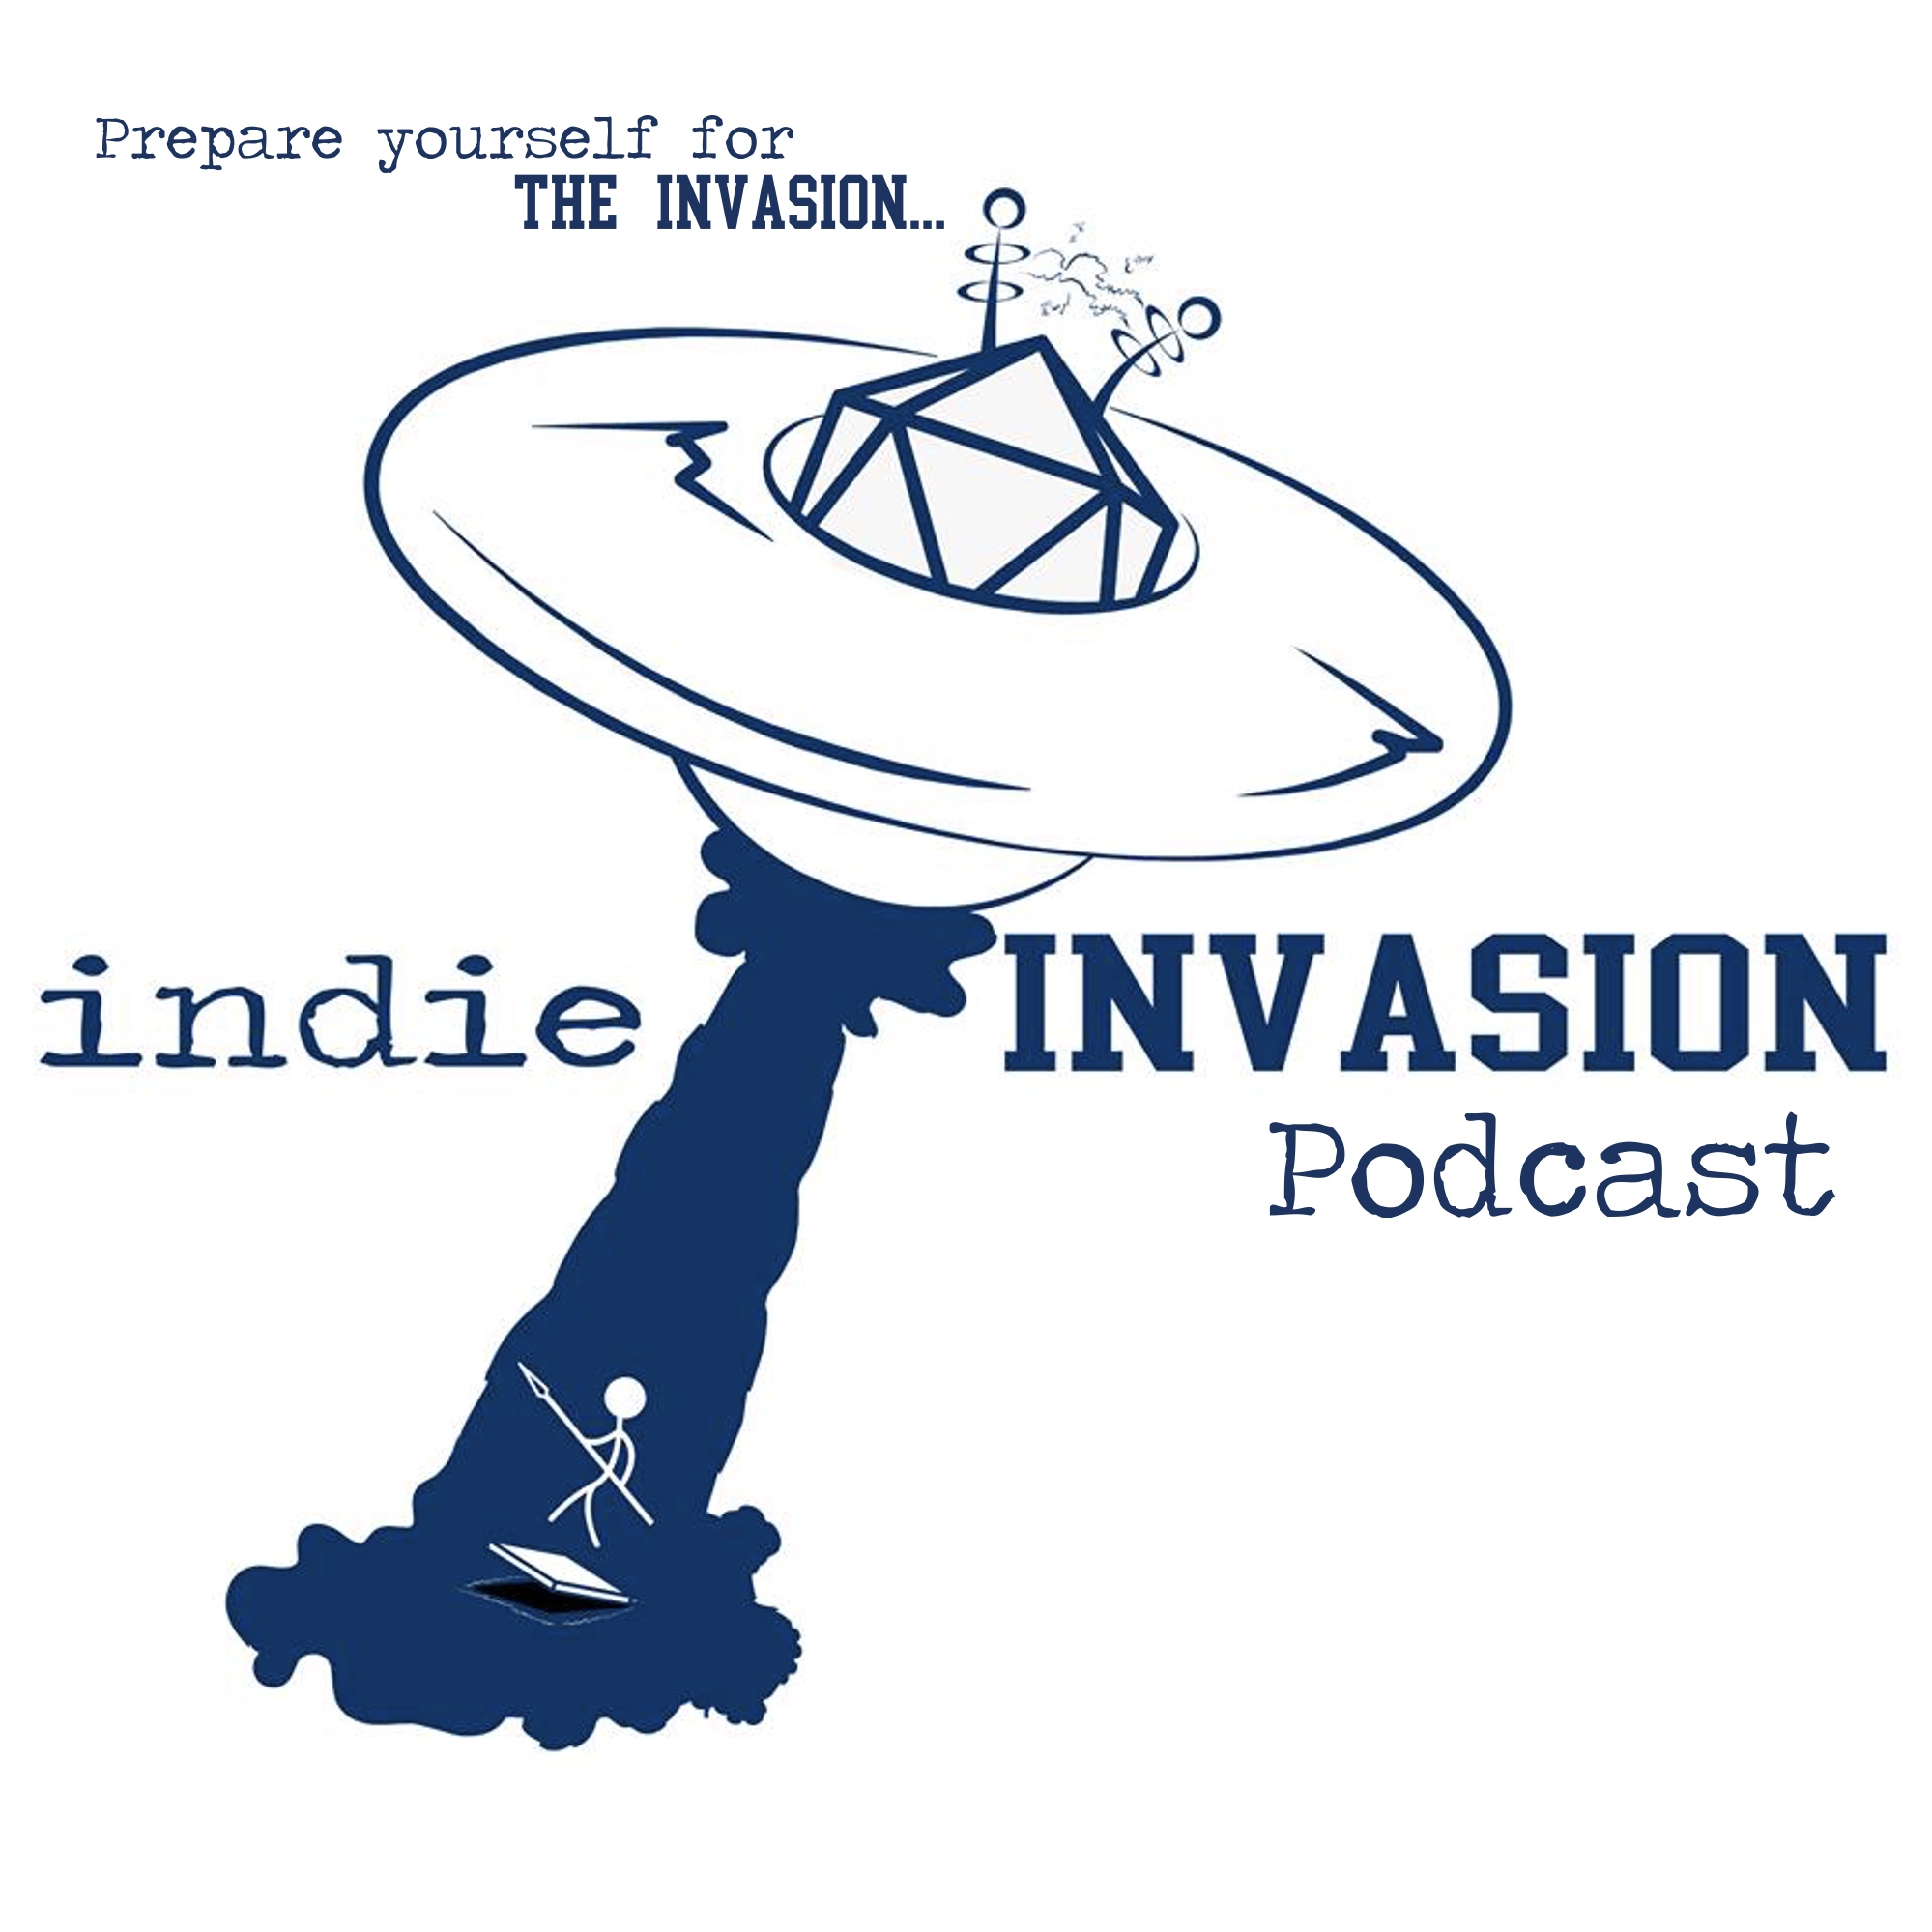 indie Invasion